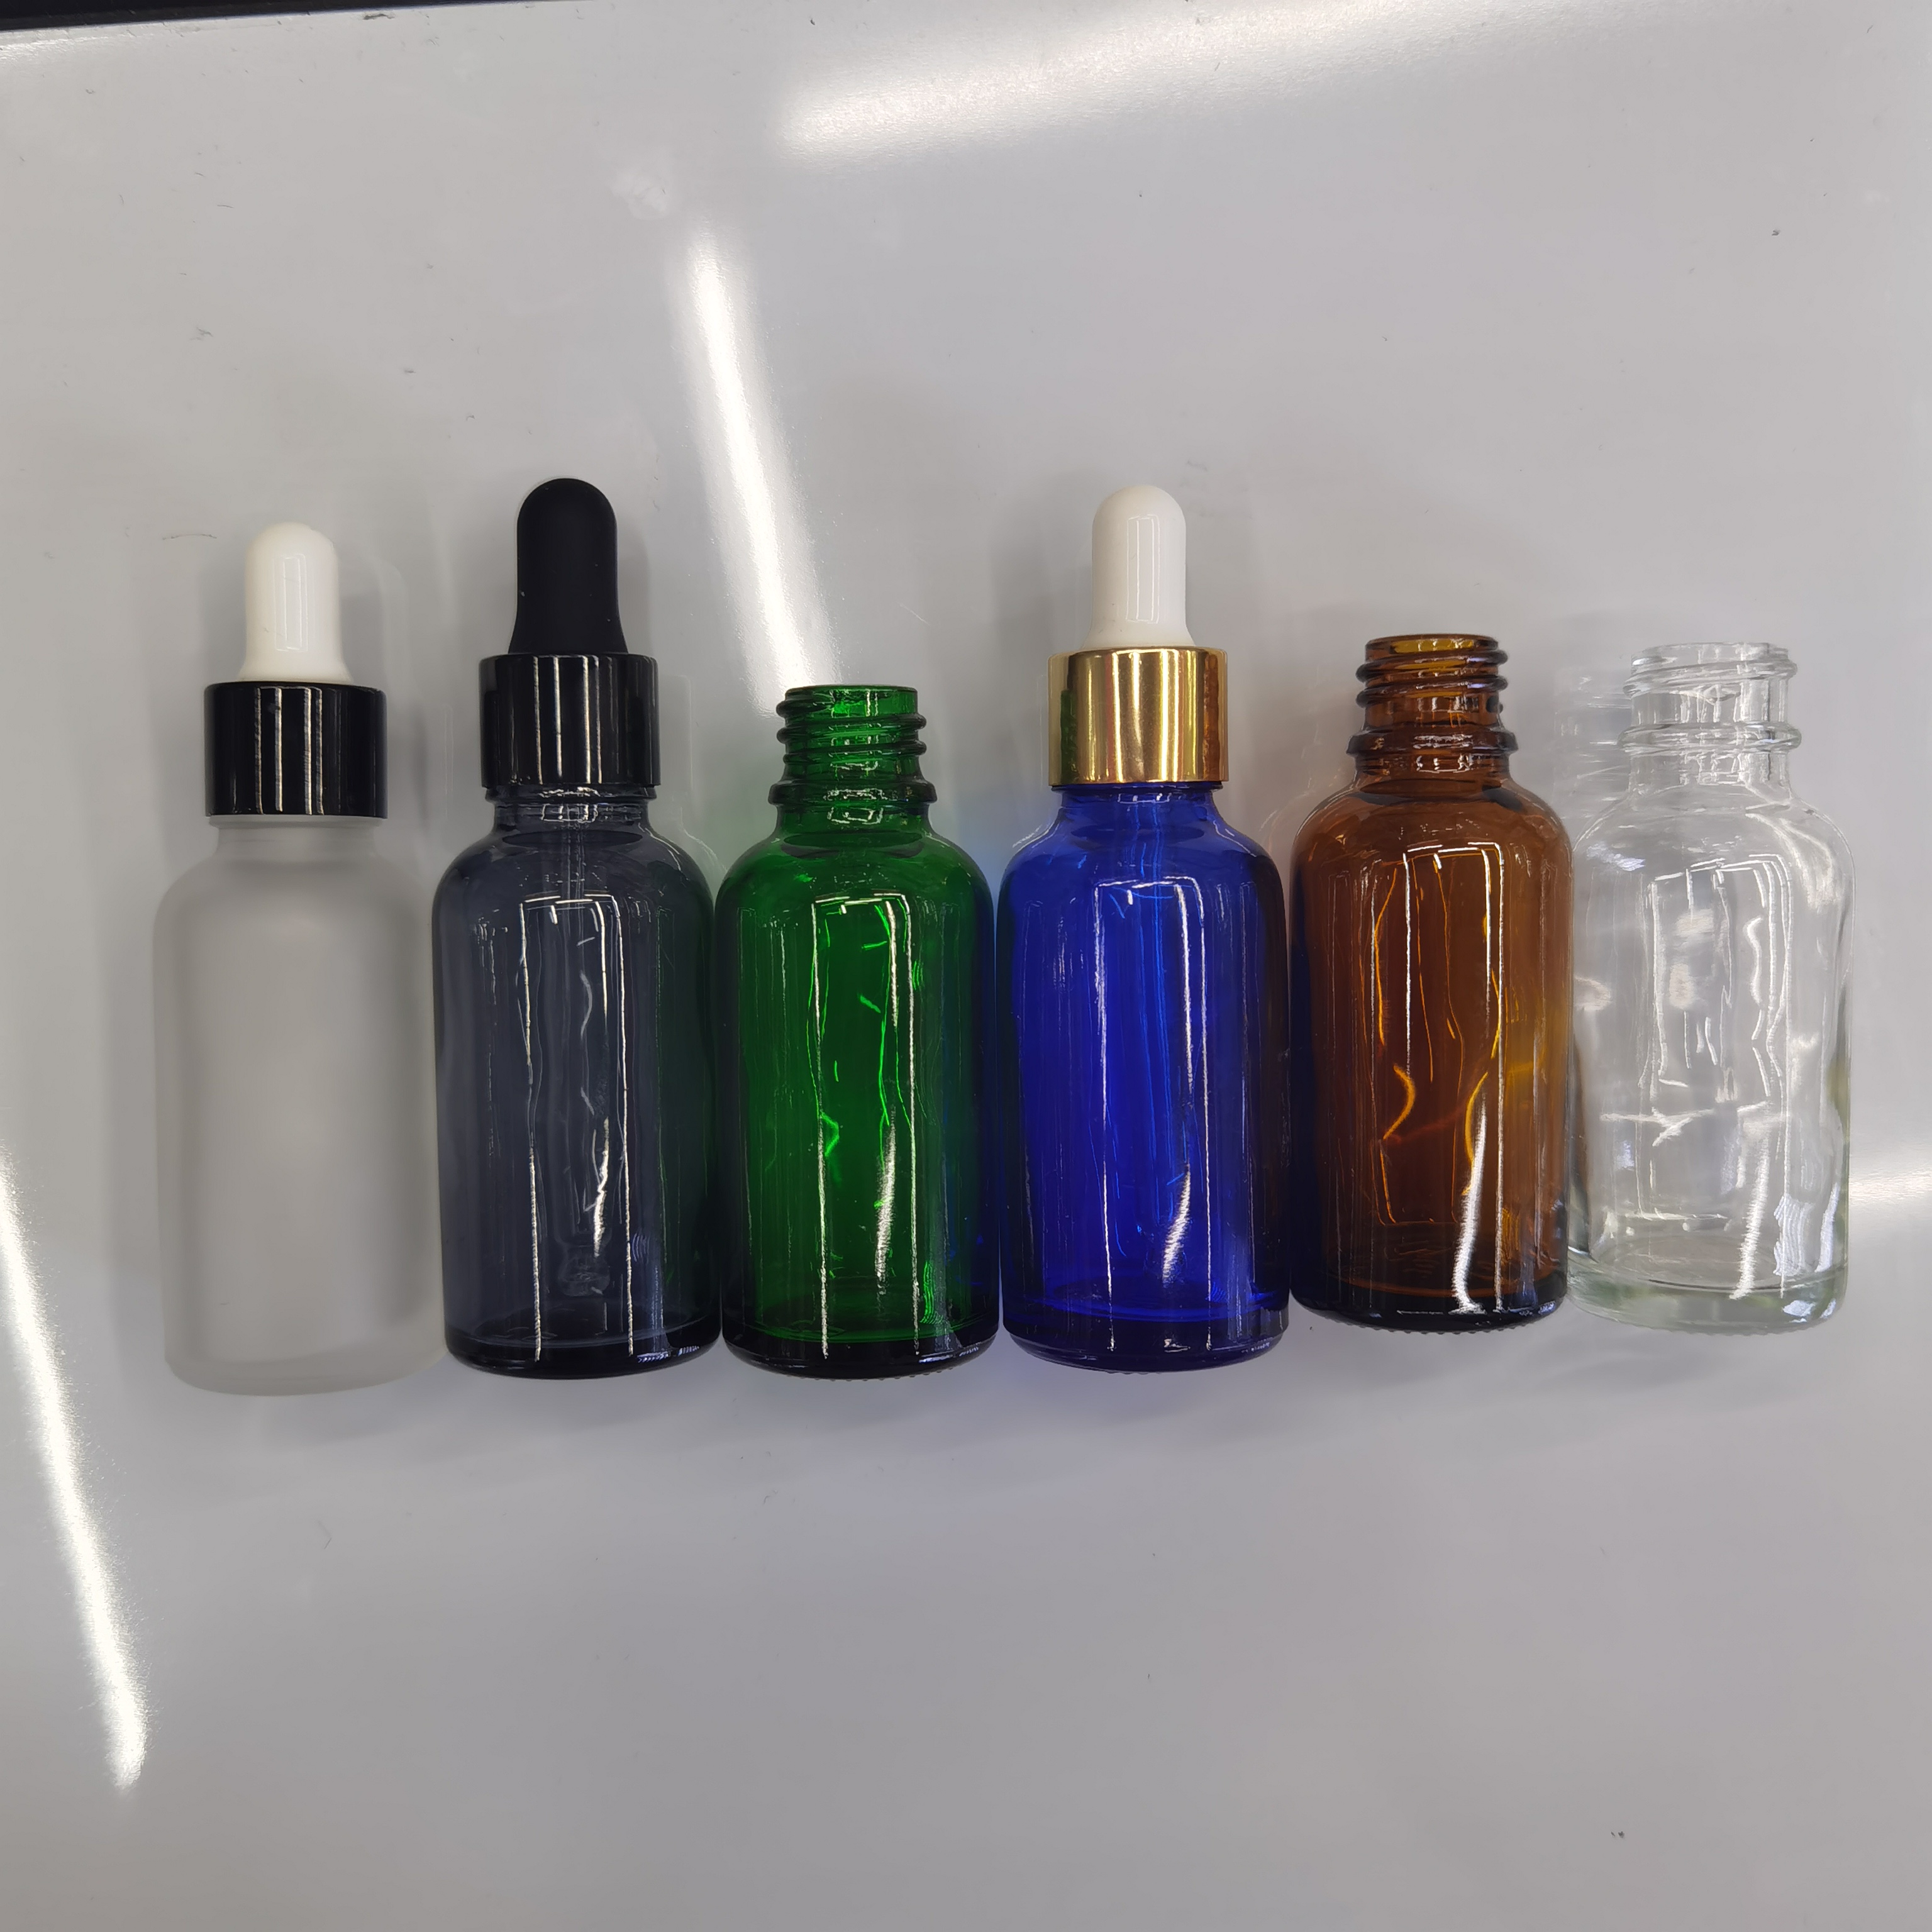 30ml精油瓶多种颜色一套茶色绿色蓝色透明款